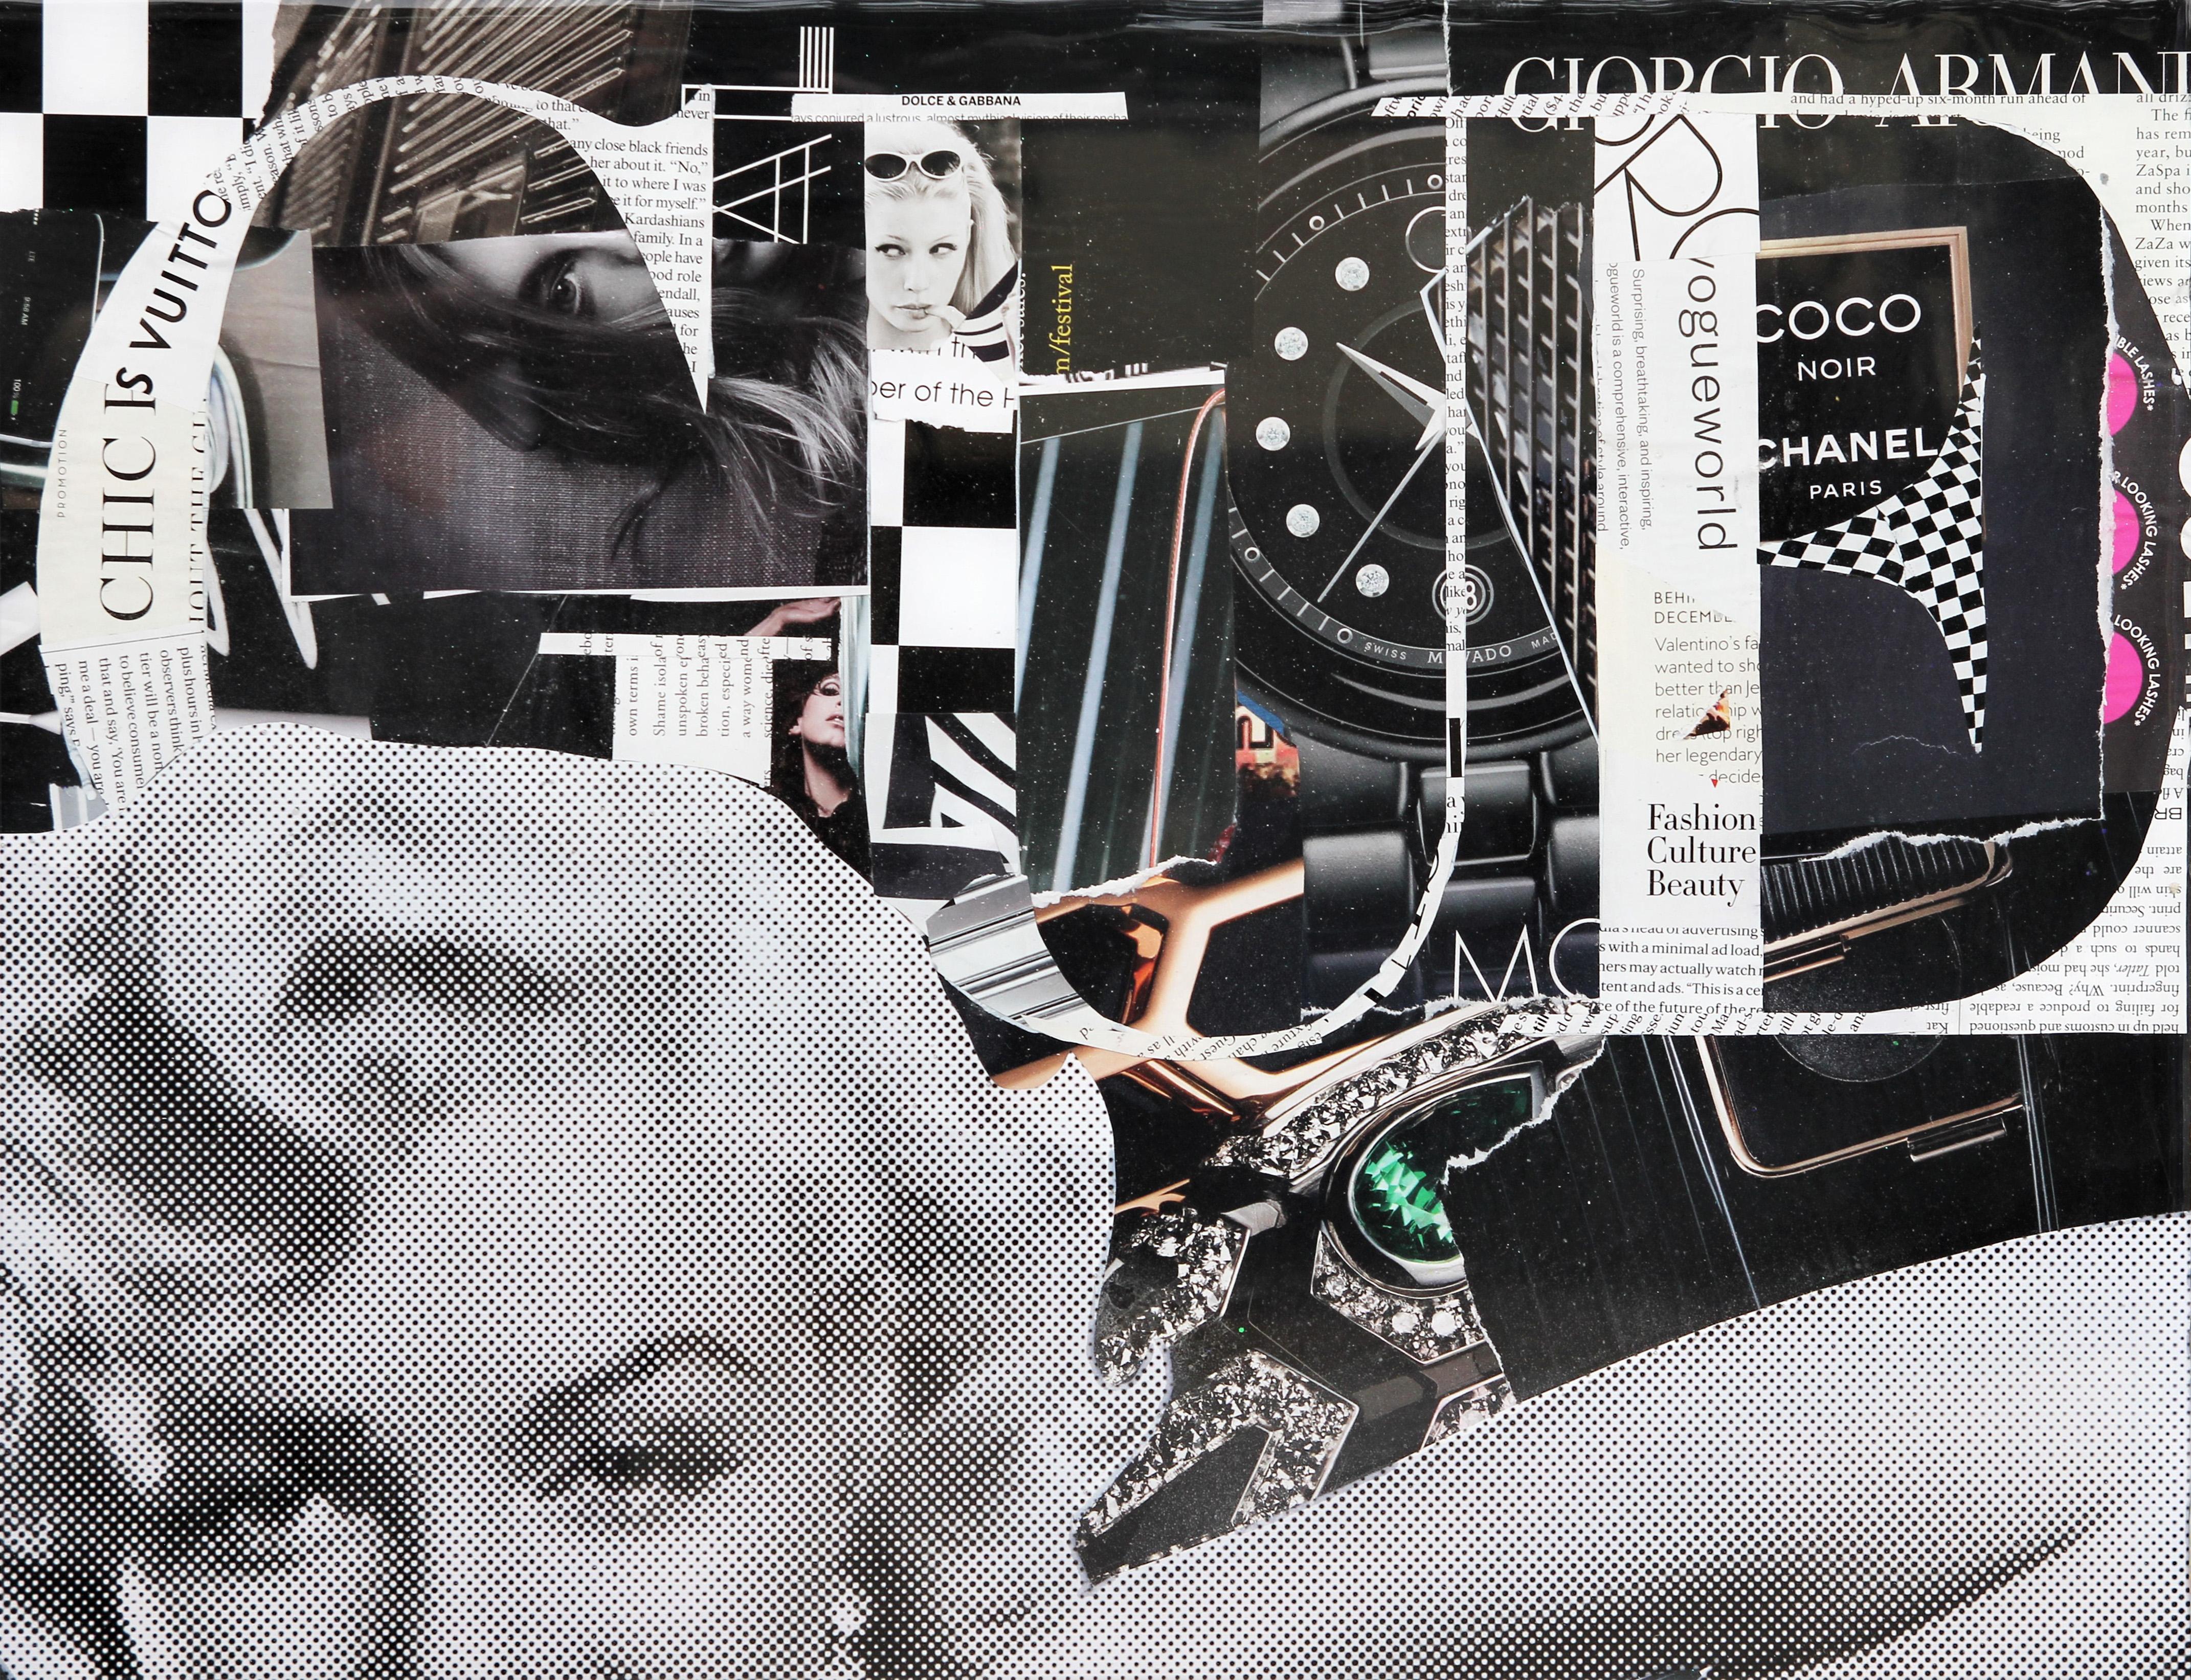 Vogue - Marilyn Monroe - Collage en résine - Technique mixte - Pop Art - Paillettes paillettes 2